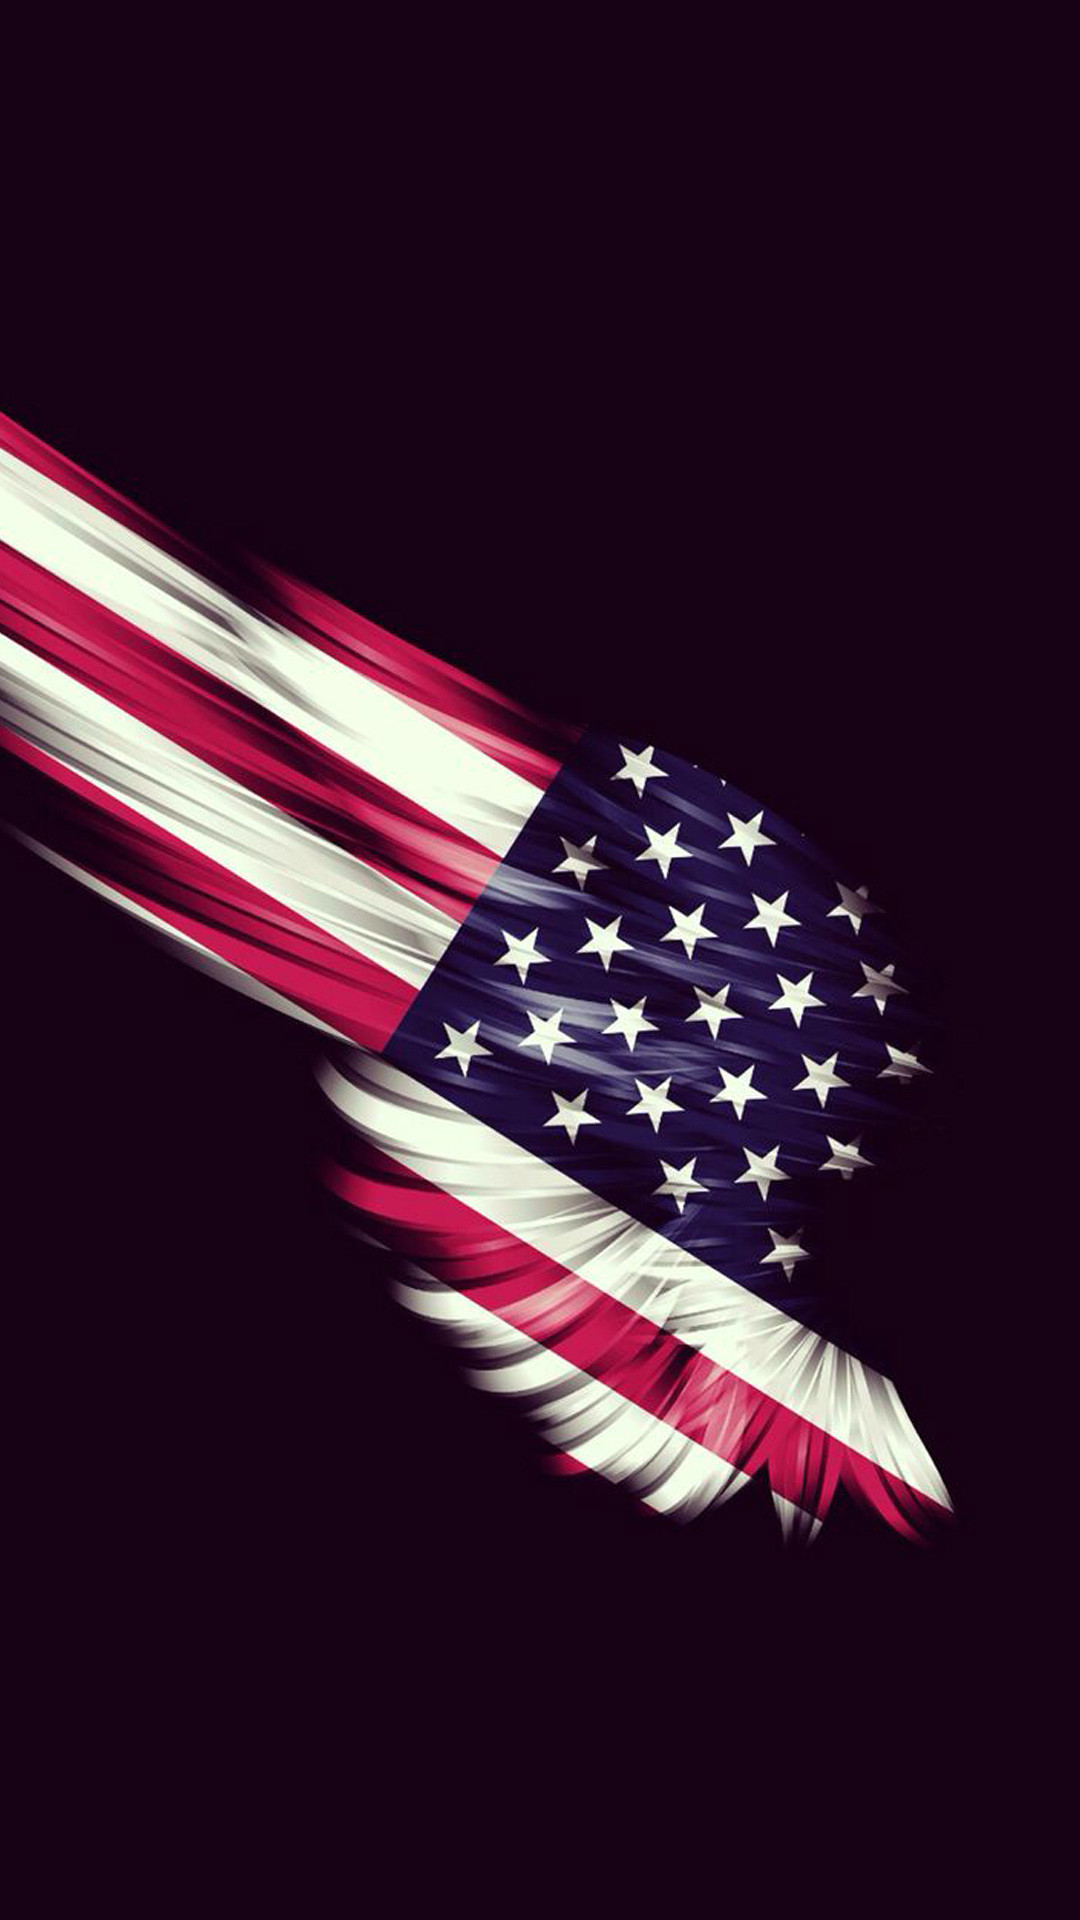 amerikanische tapeten hd,flagge der vereinigten staaten,flagge,grafikdesign,flügel,illustration